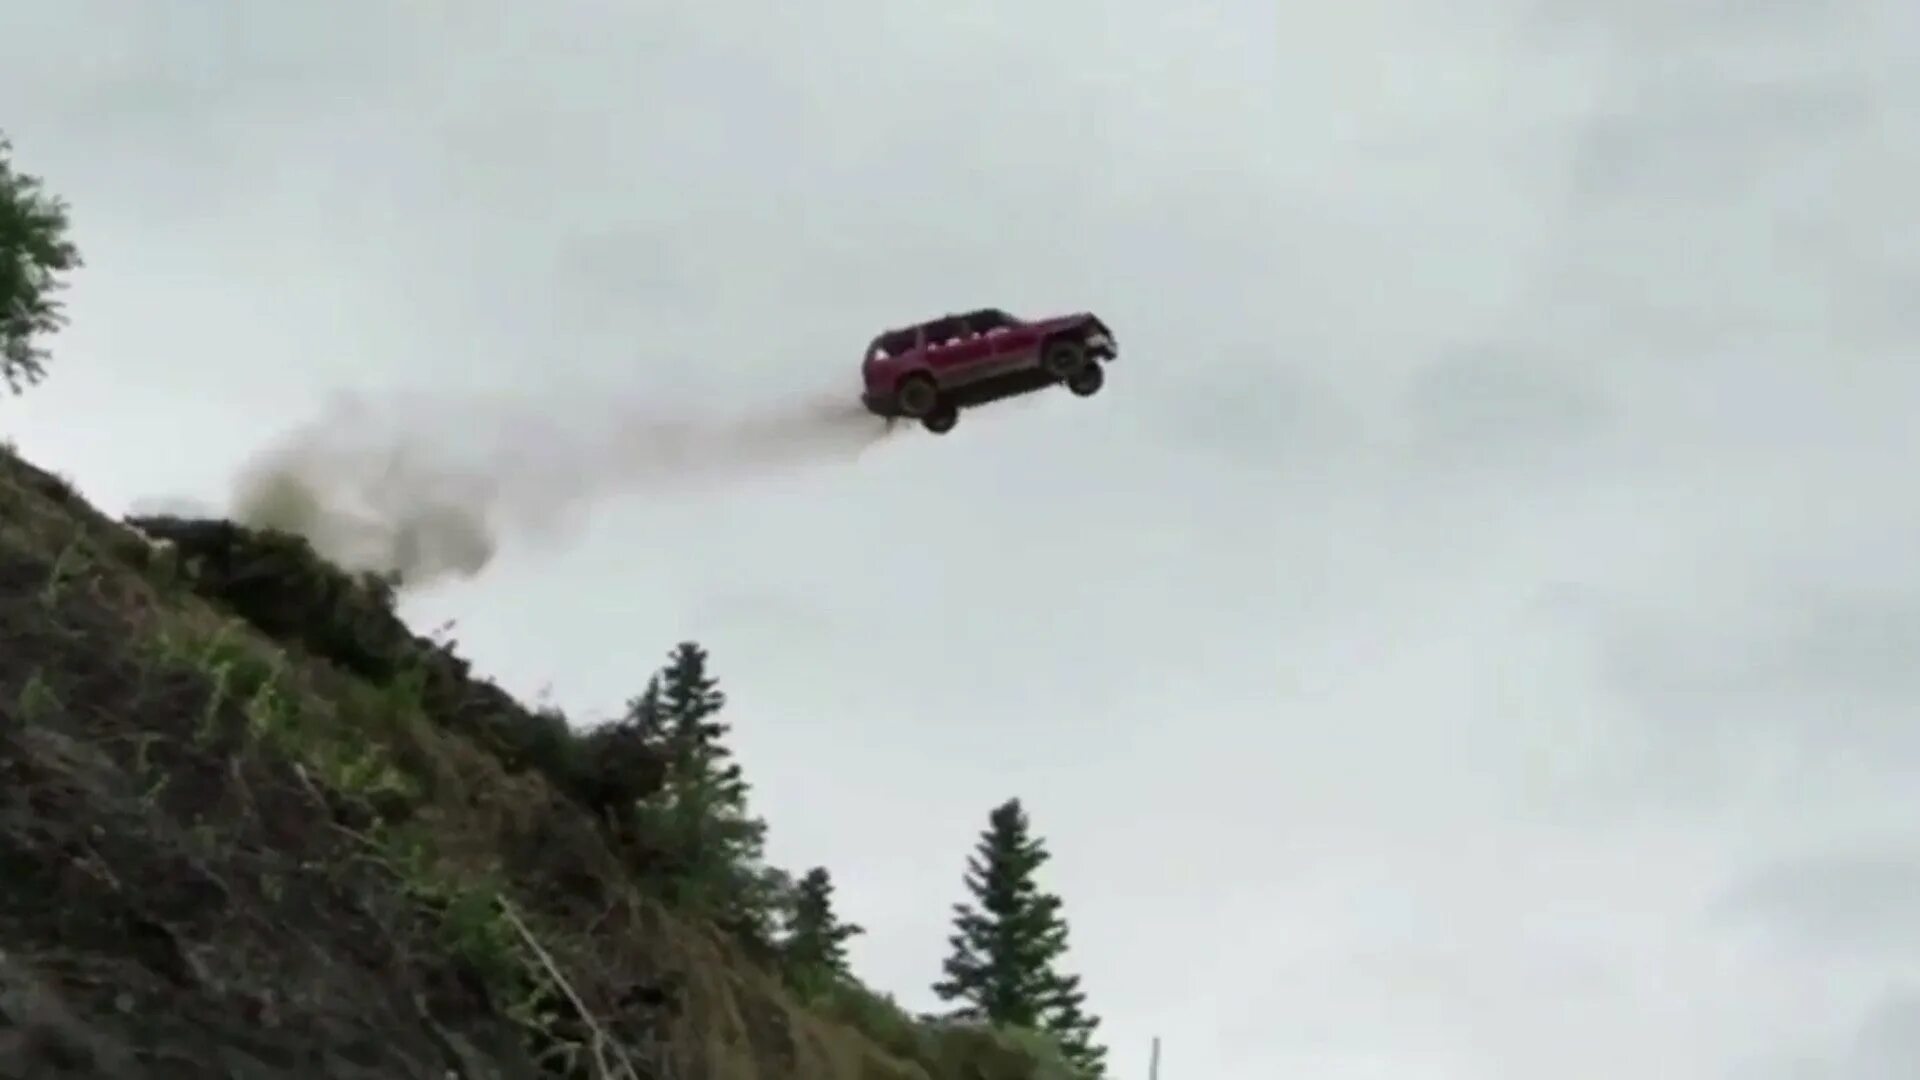 Машина падает с горы. Машина на обрыве. Машина летит с обрыва. Машина падает с обрыва. Кидает машину на скорости